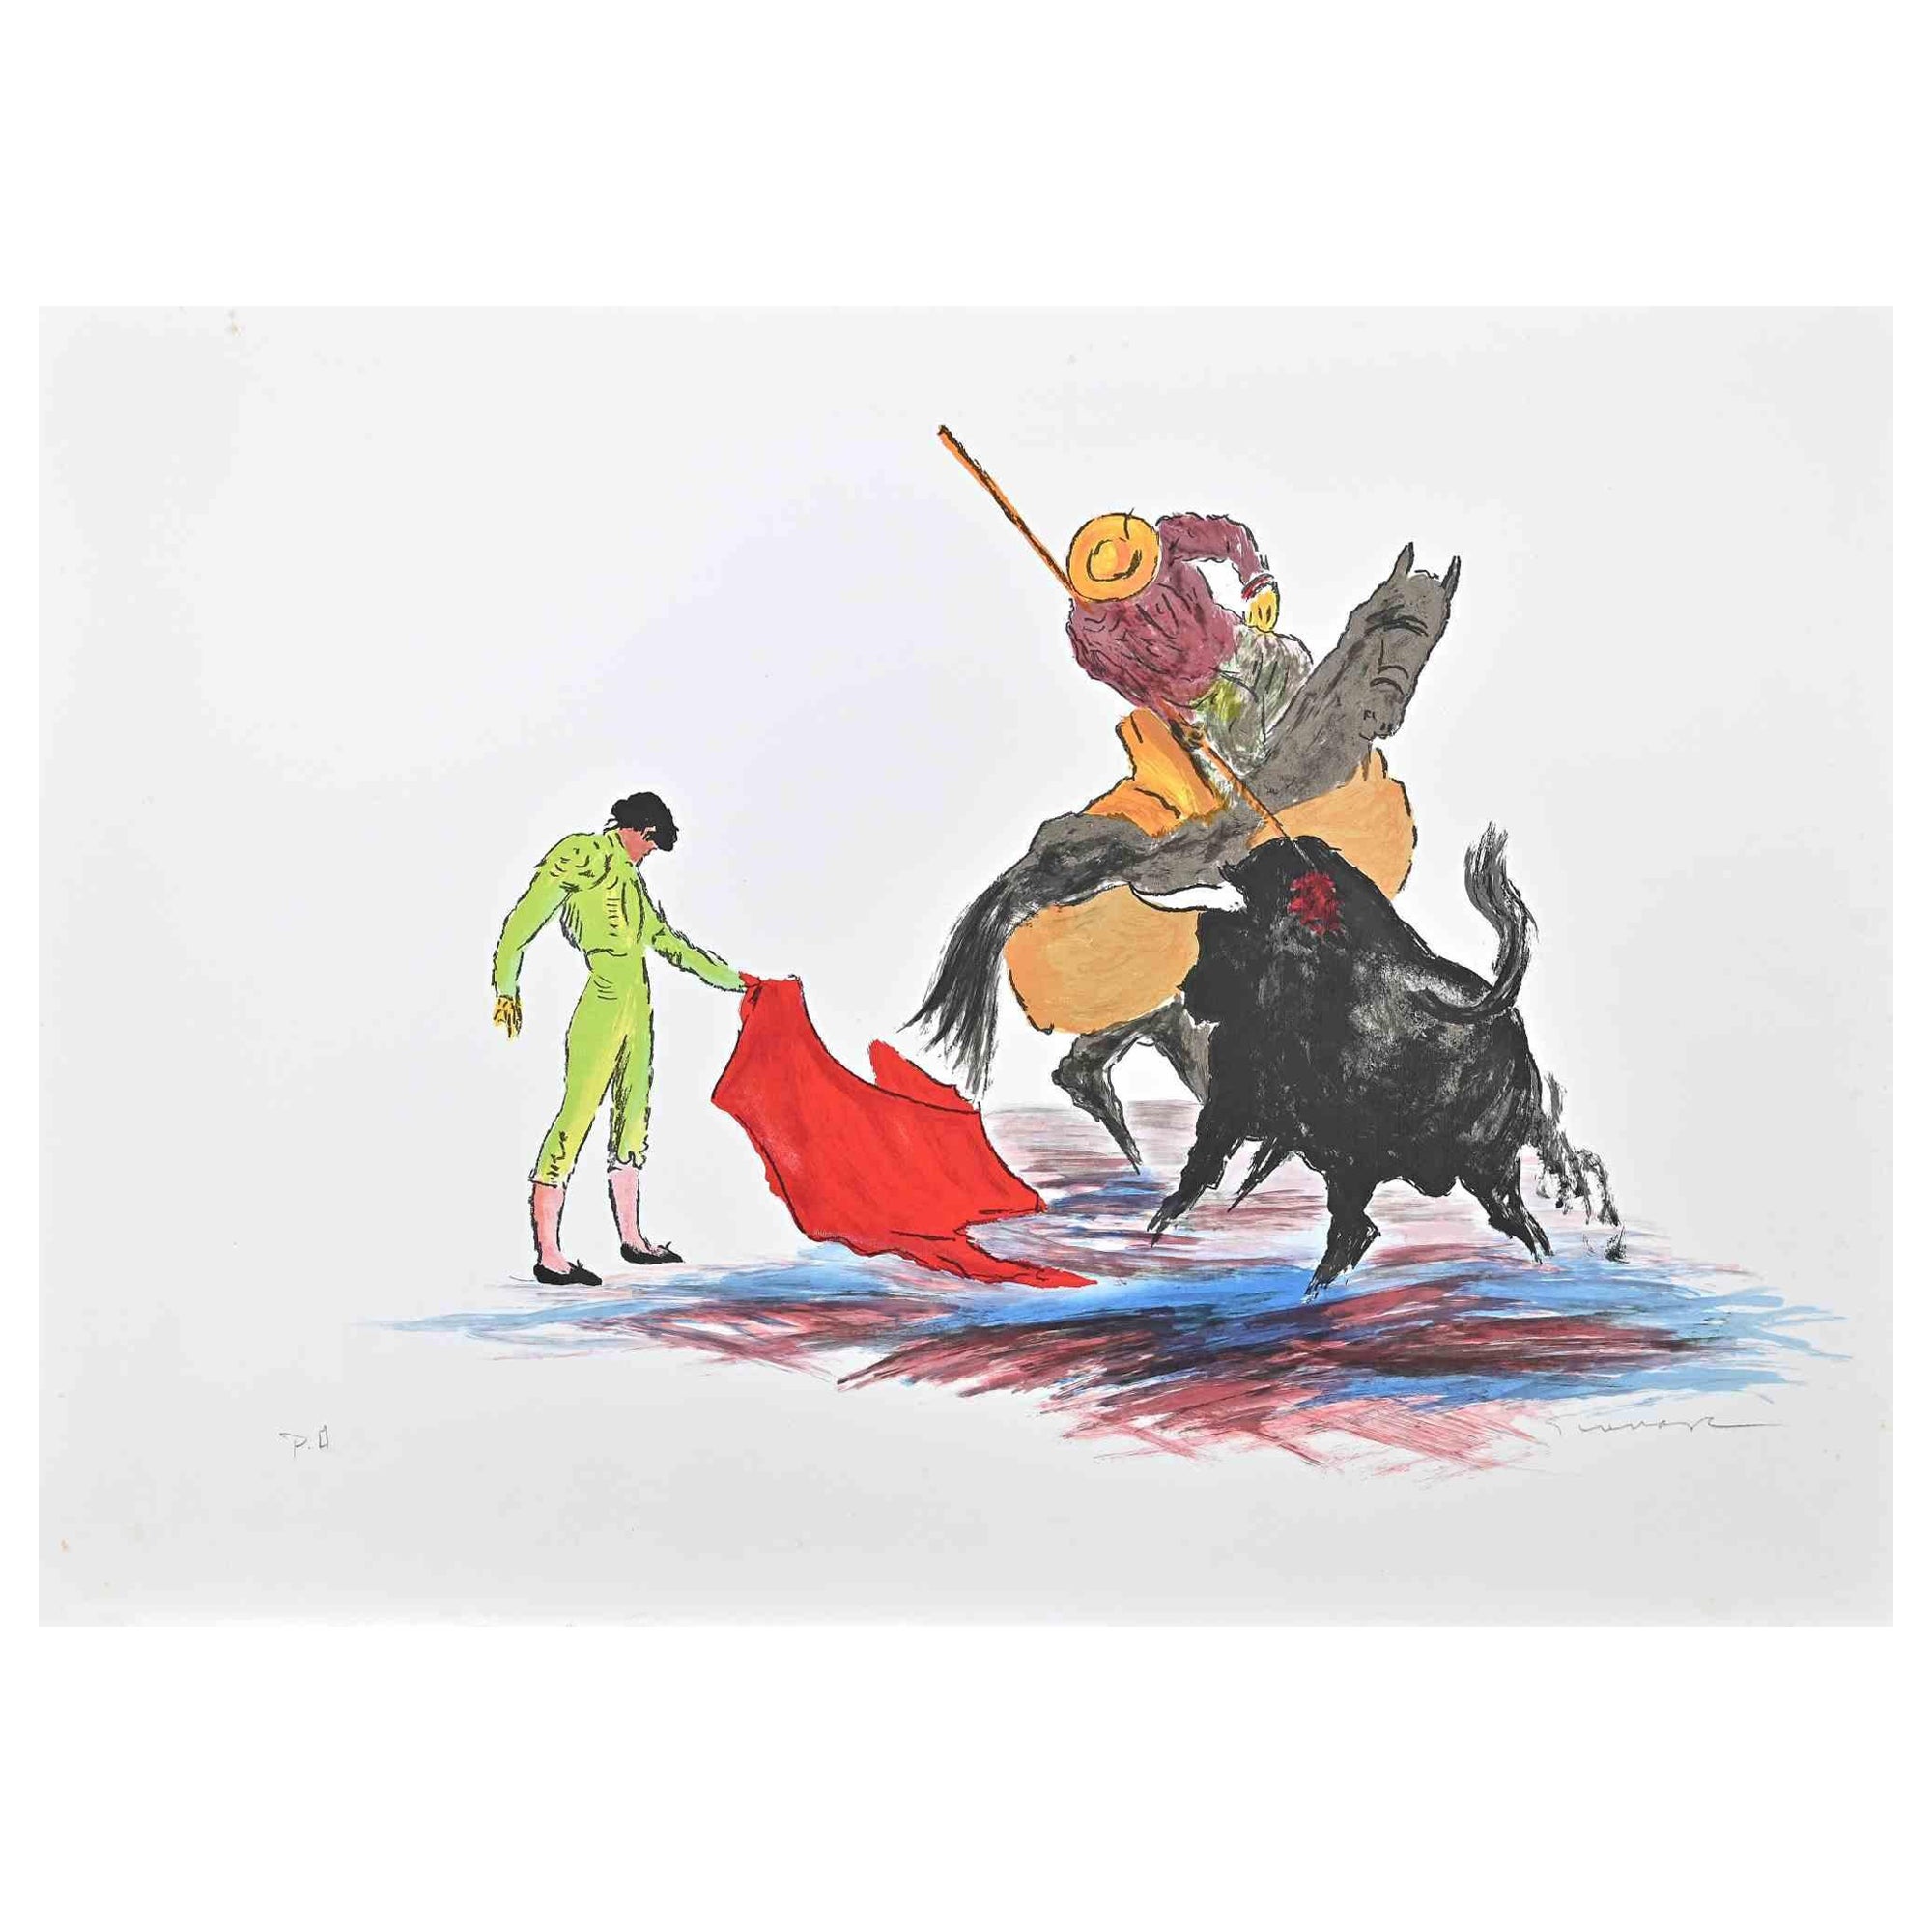 Der Stierkämpfer ist ein sehr farbenfrohes Kunstwerk von Josè Guevara aus dem  1990s.

Lithographie auf Papier. Herausgegeben von der Fondazione Di Paolo.

Handsigniert.

Der Beweis des Künstlers.

Gute Bedingungen.

Das Kunstwerk zeigt eines der am